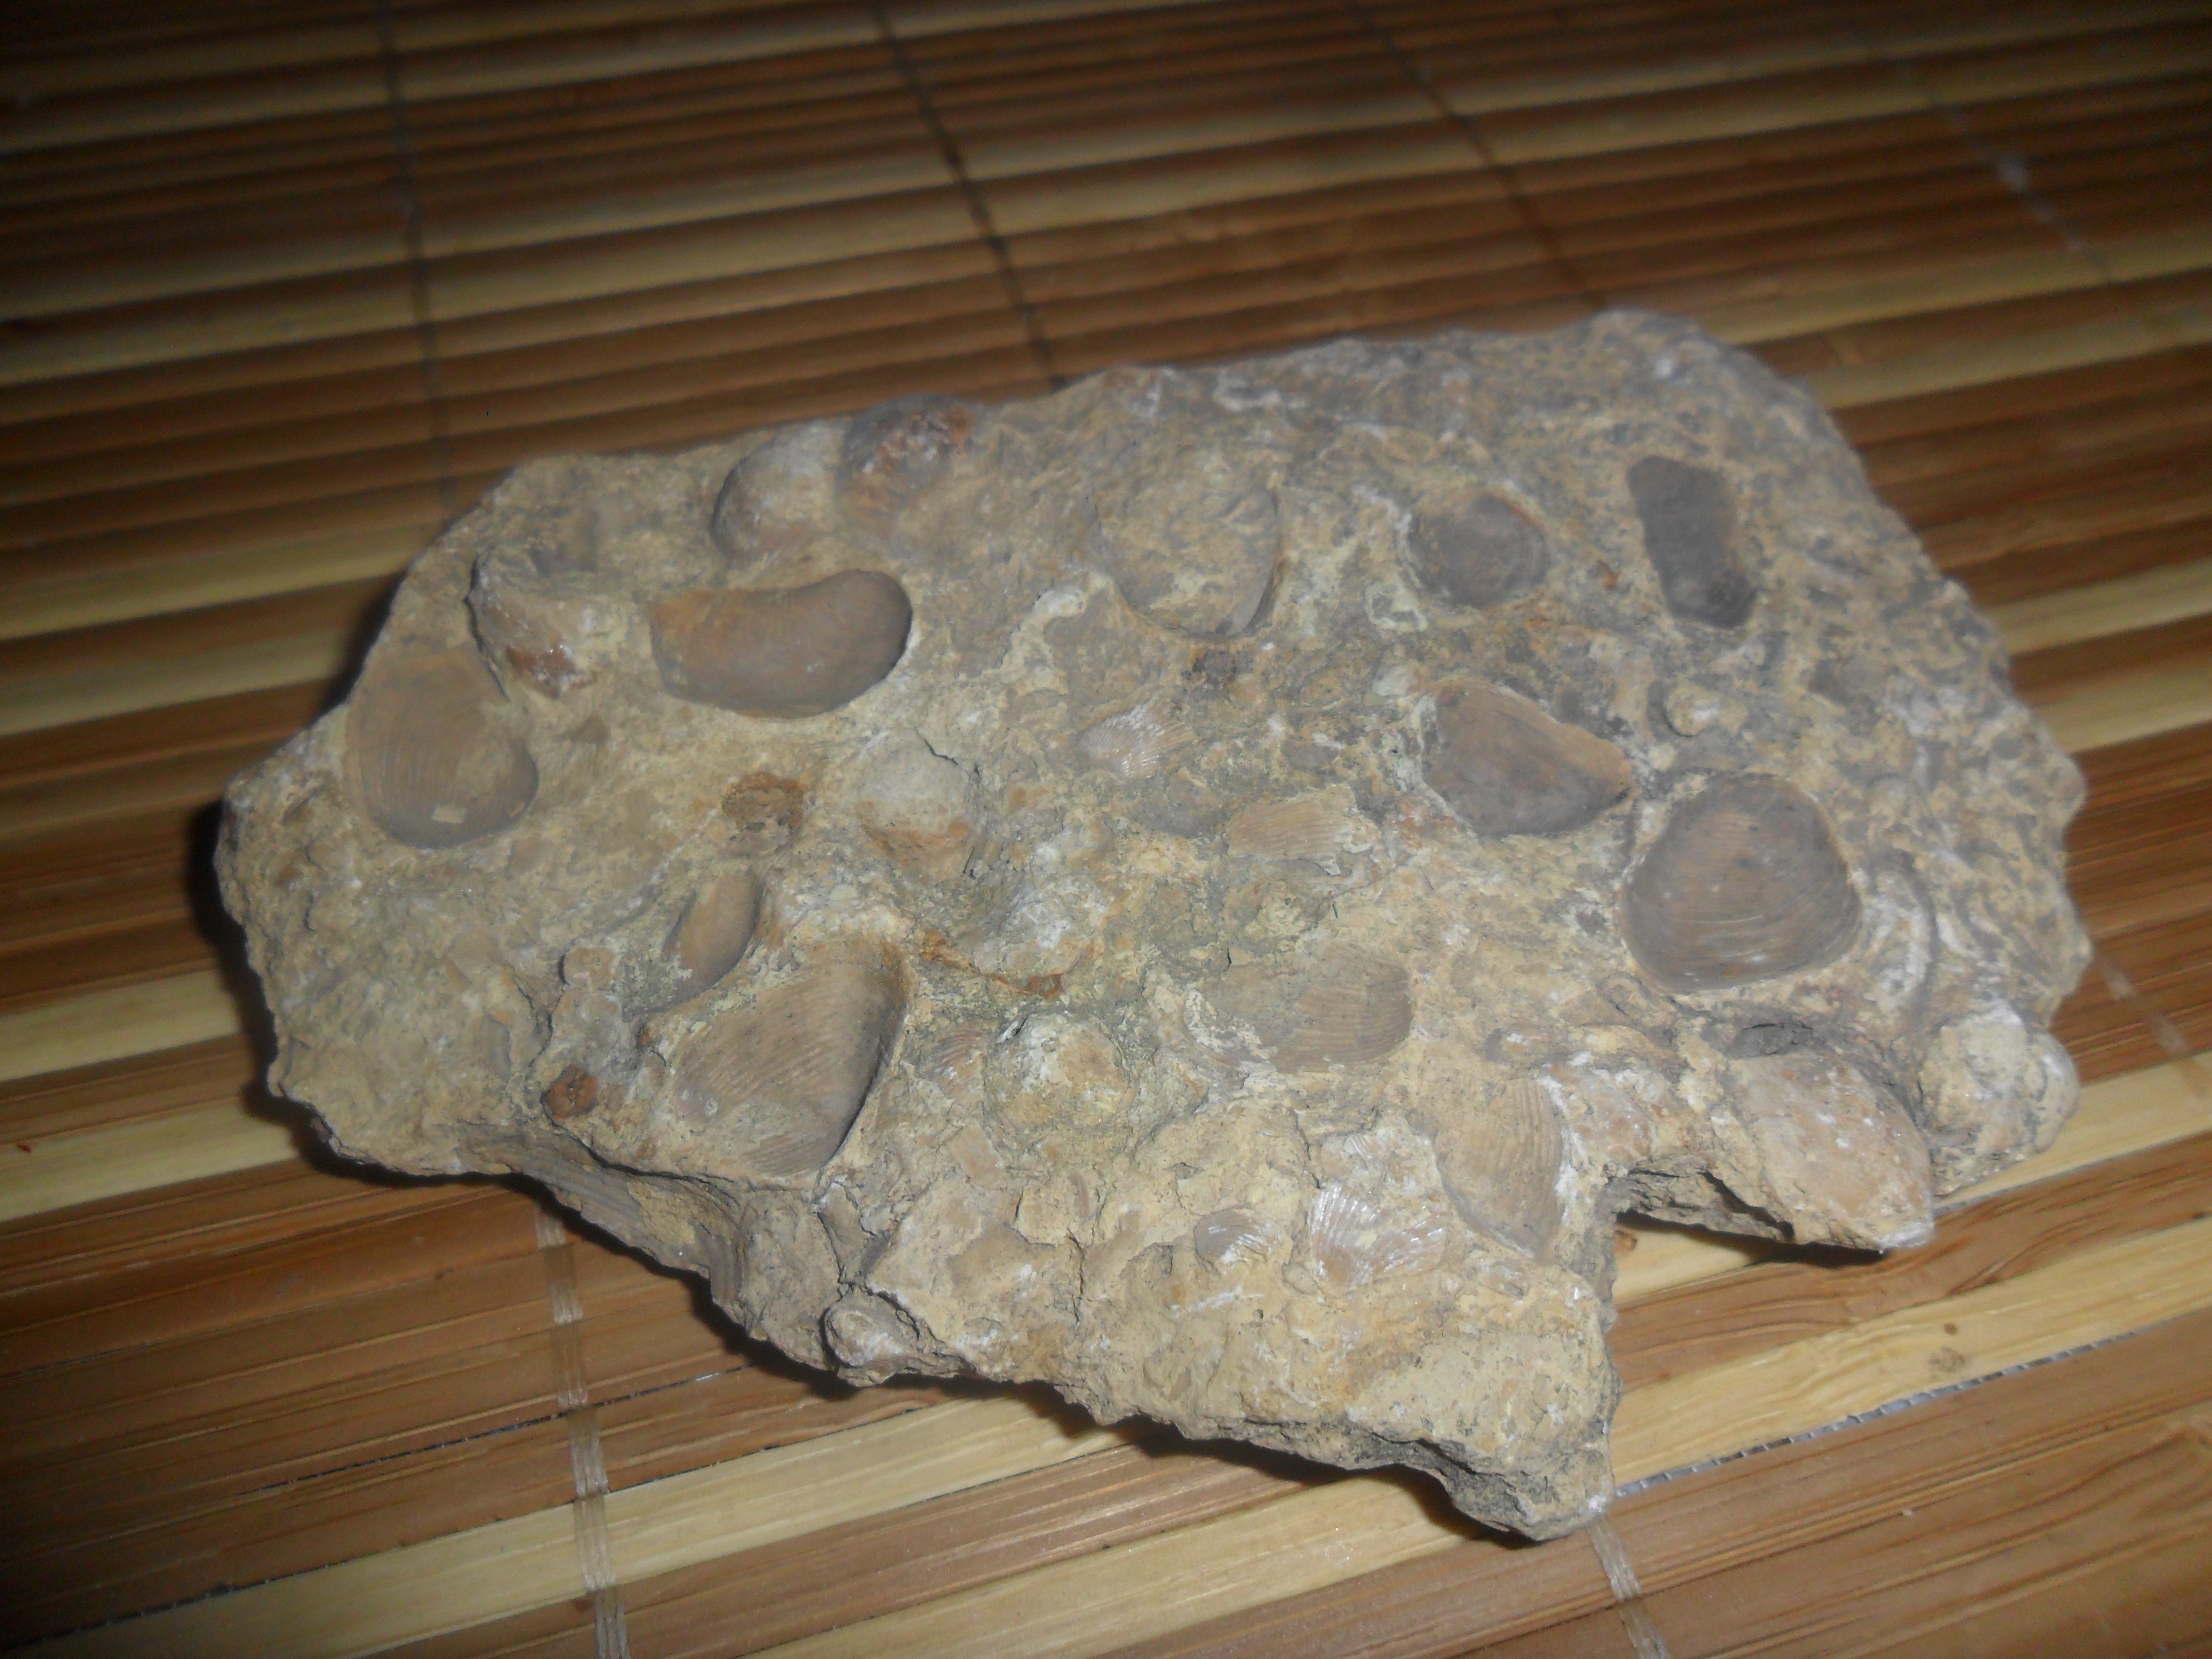 Исследовательская работа учащегося Ископаемые артефакты (окаменелости)